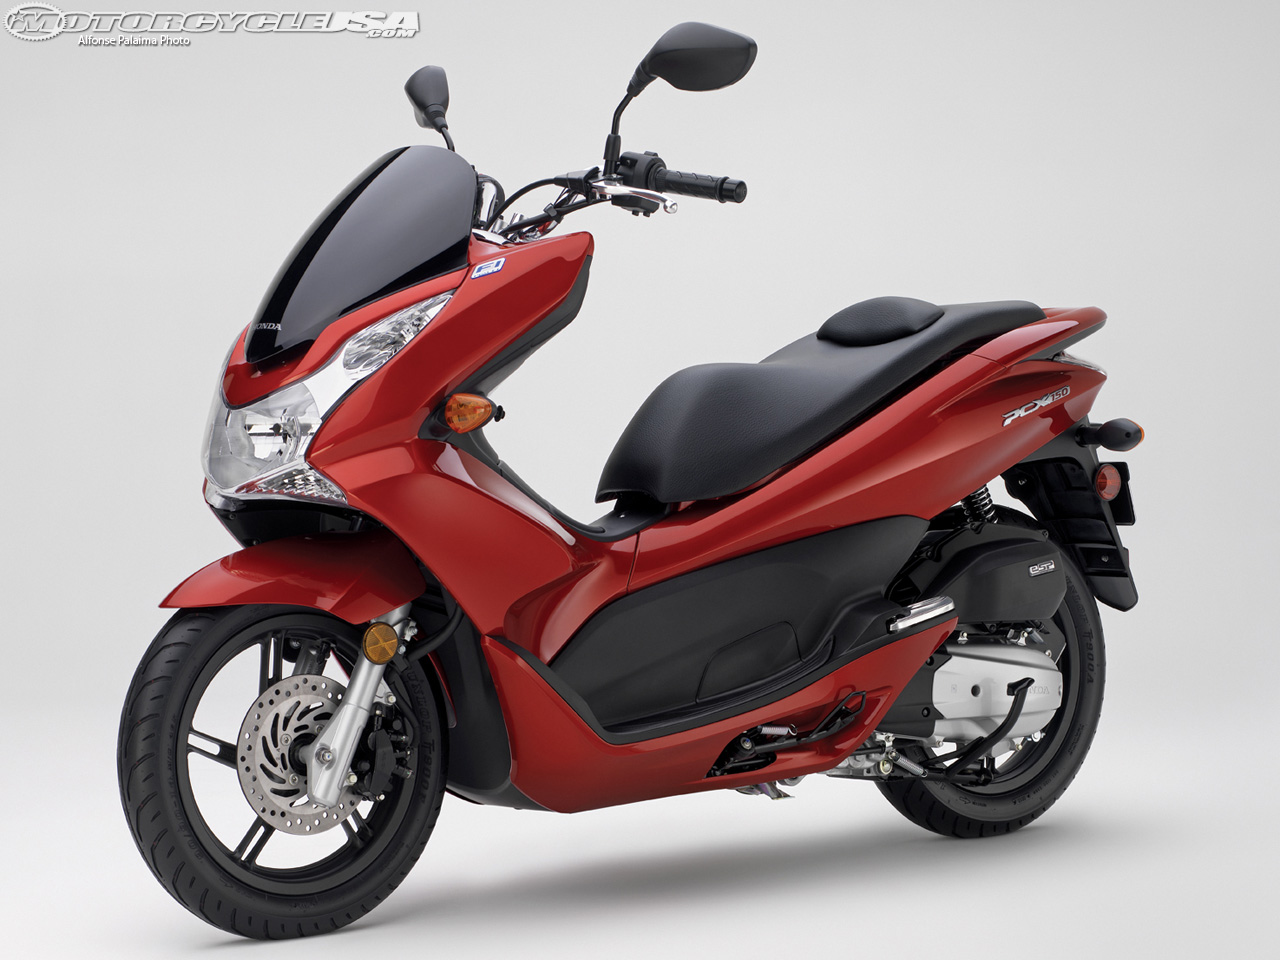 Motos Tunadas: Honda Pcx 150 2014 Fotos.